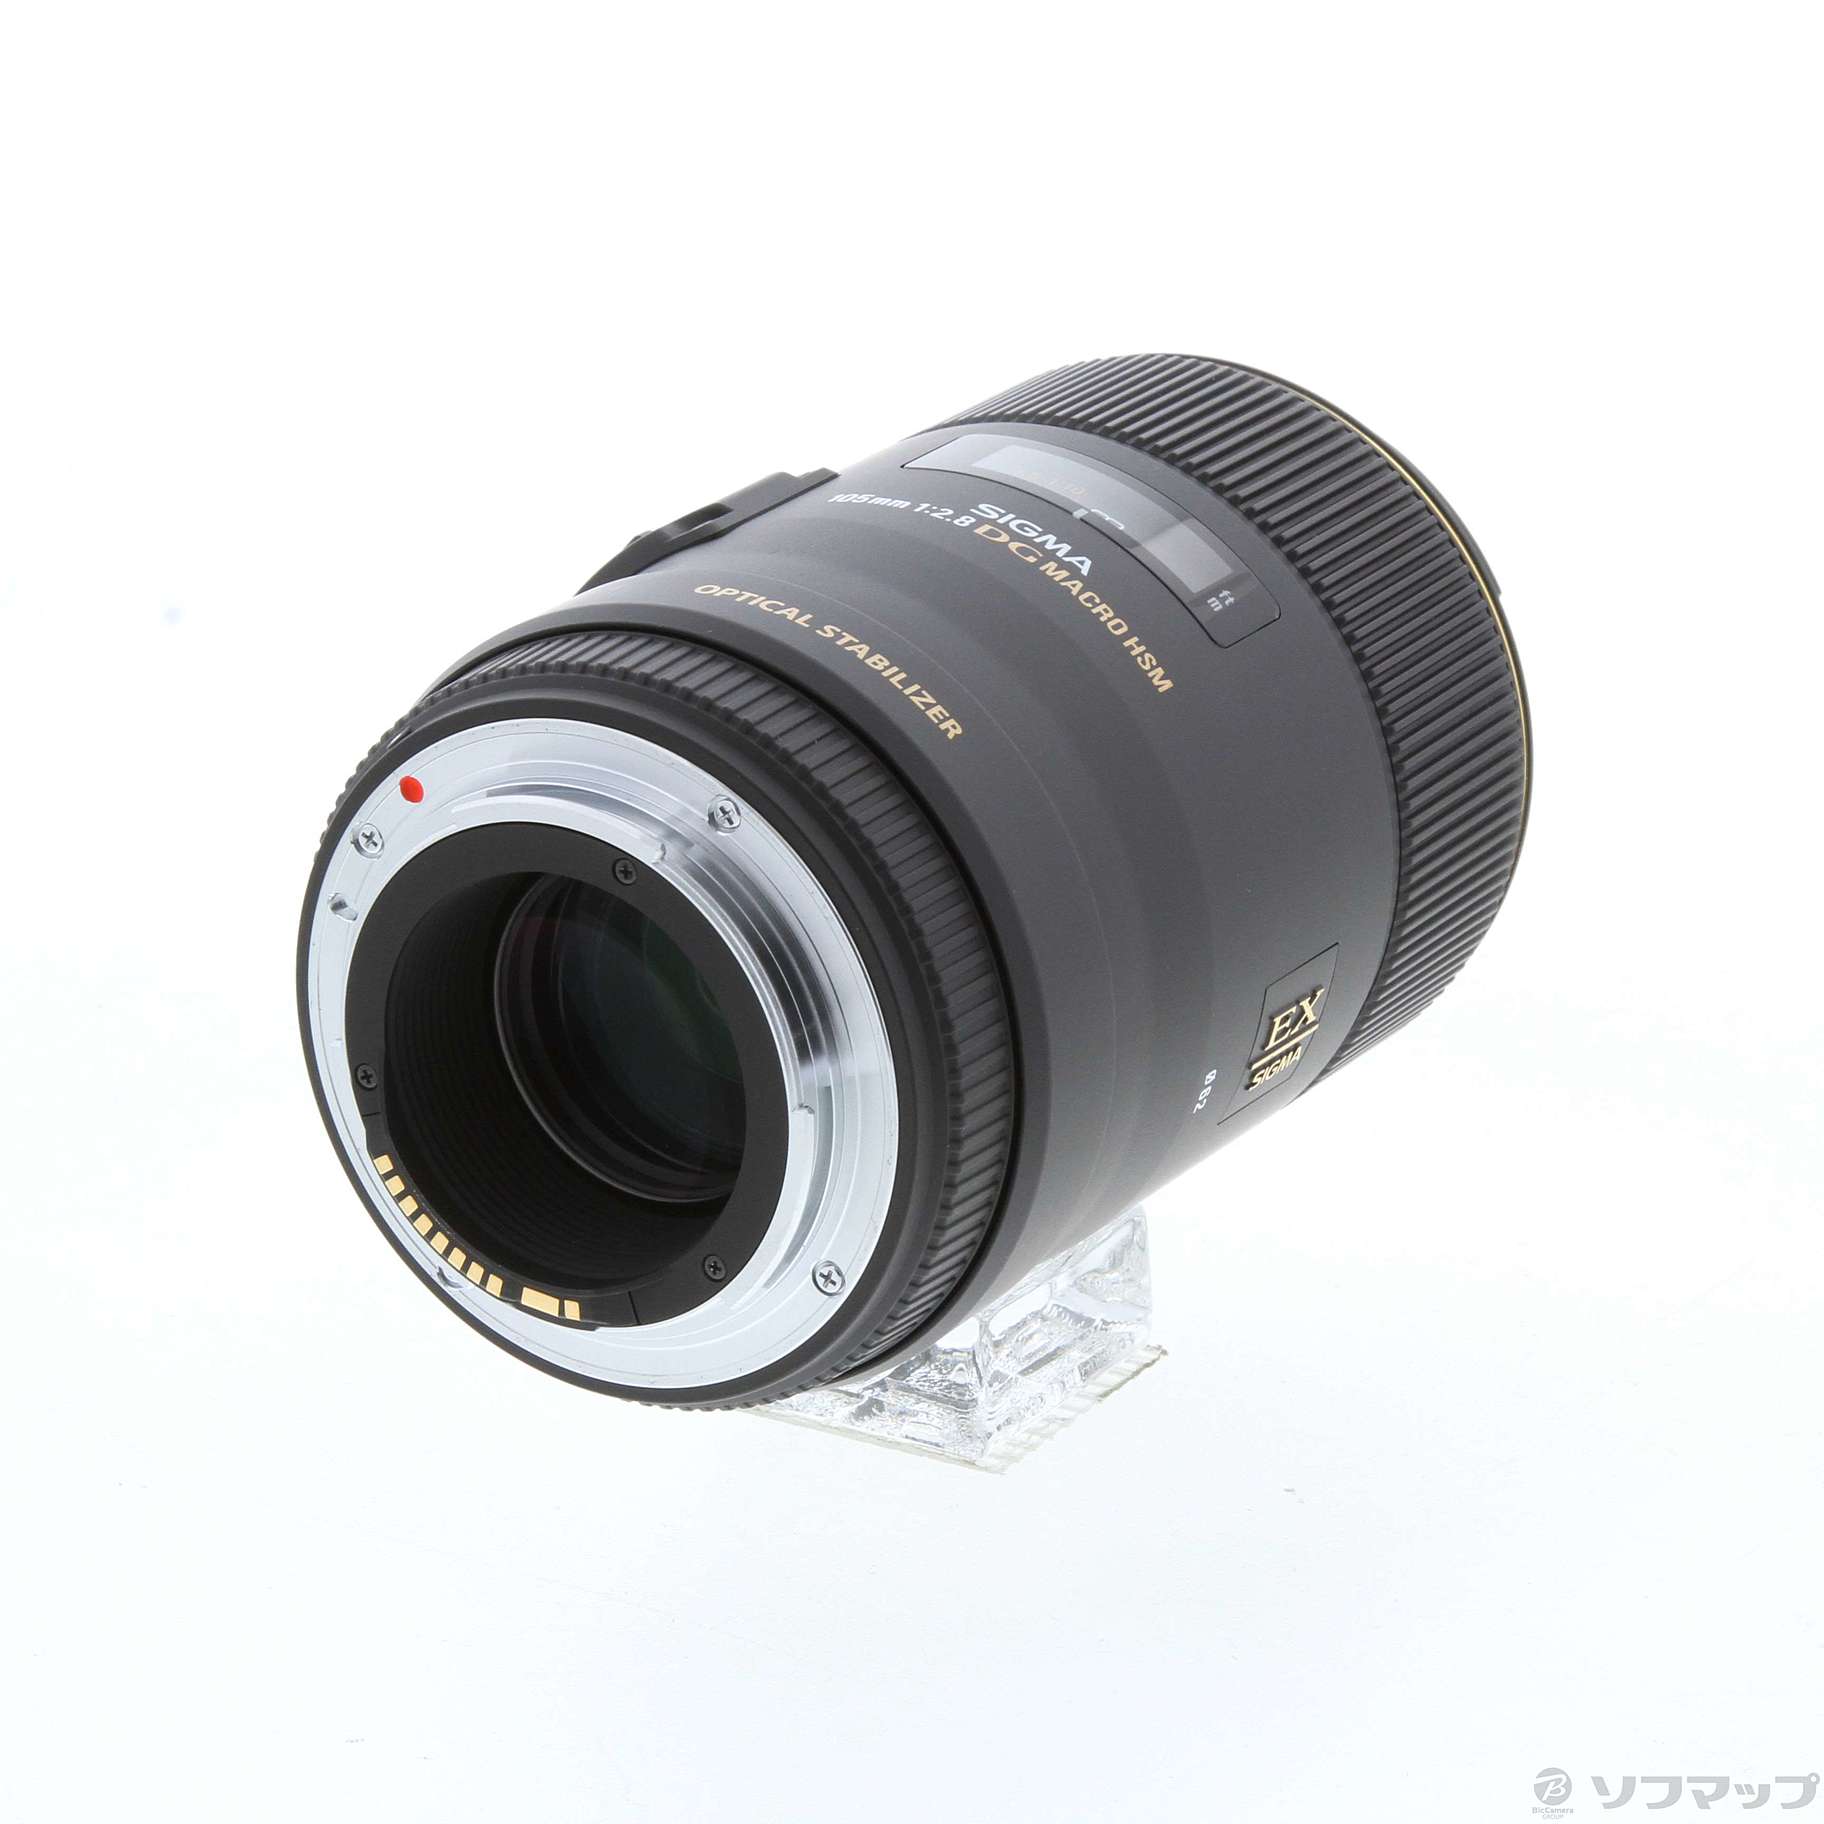 〔展示品〕 SIGMA AF MACRO 105mm F2.8 EX DG OS HSM (Canon用) (レンズ)